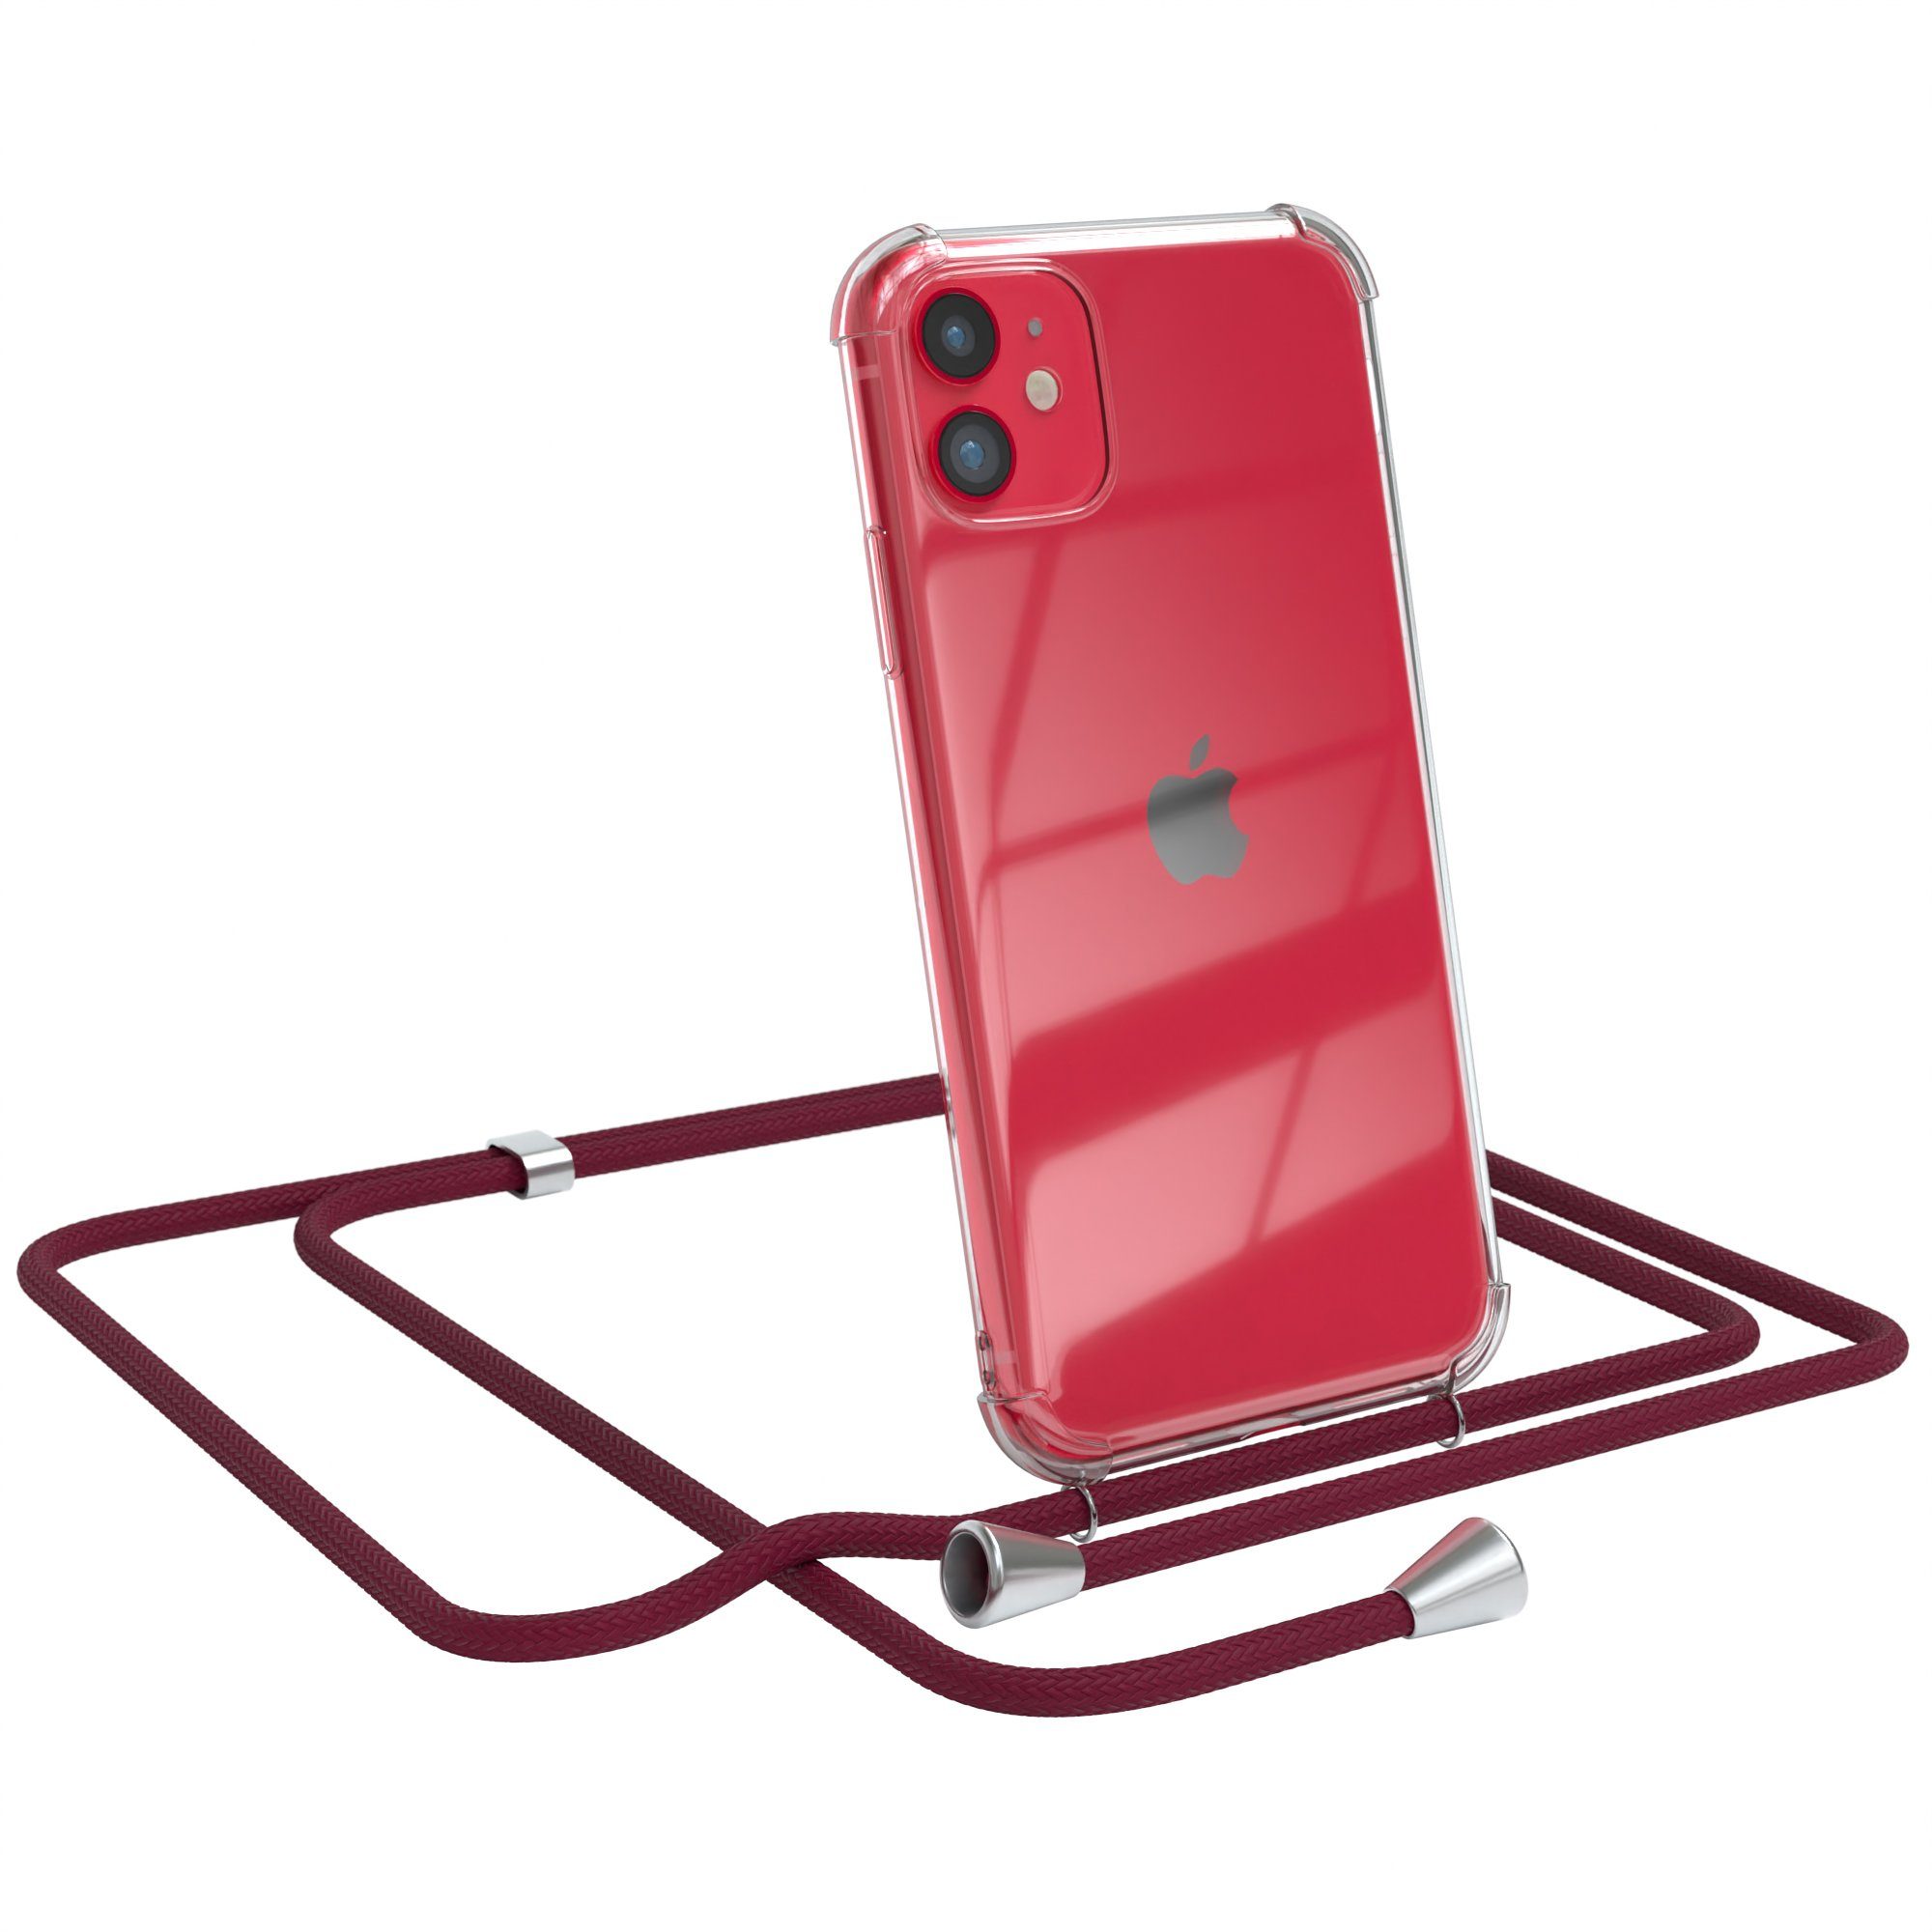 EAZY CASE Handykette Hülle mit Kette für Apple iPhone 11 6,1 Zoll,  Silikonhülle durchsichtig mit Umhängeband Handytasche Bordeaux Rot